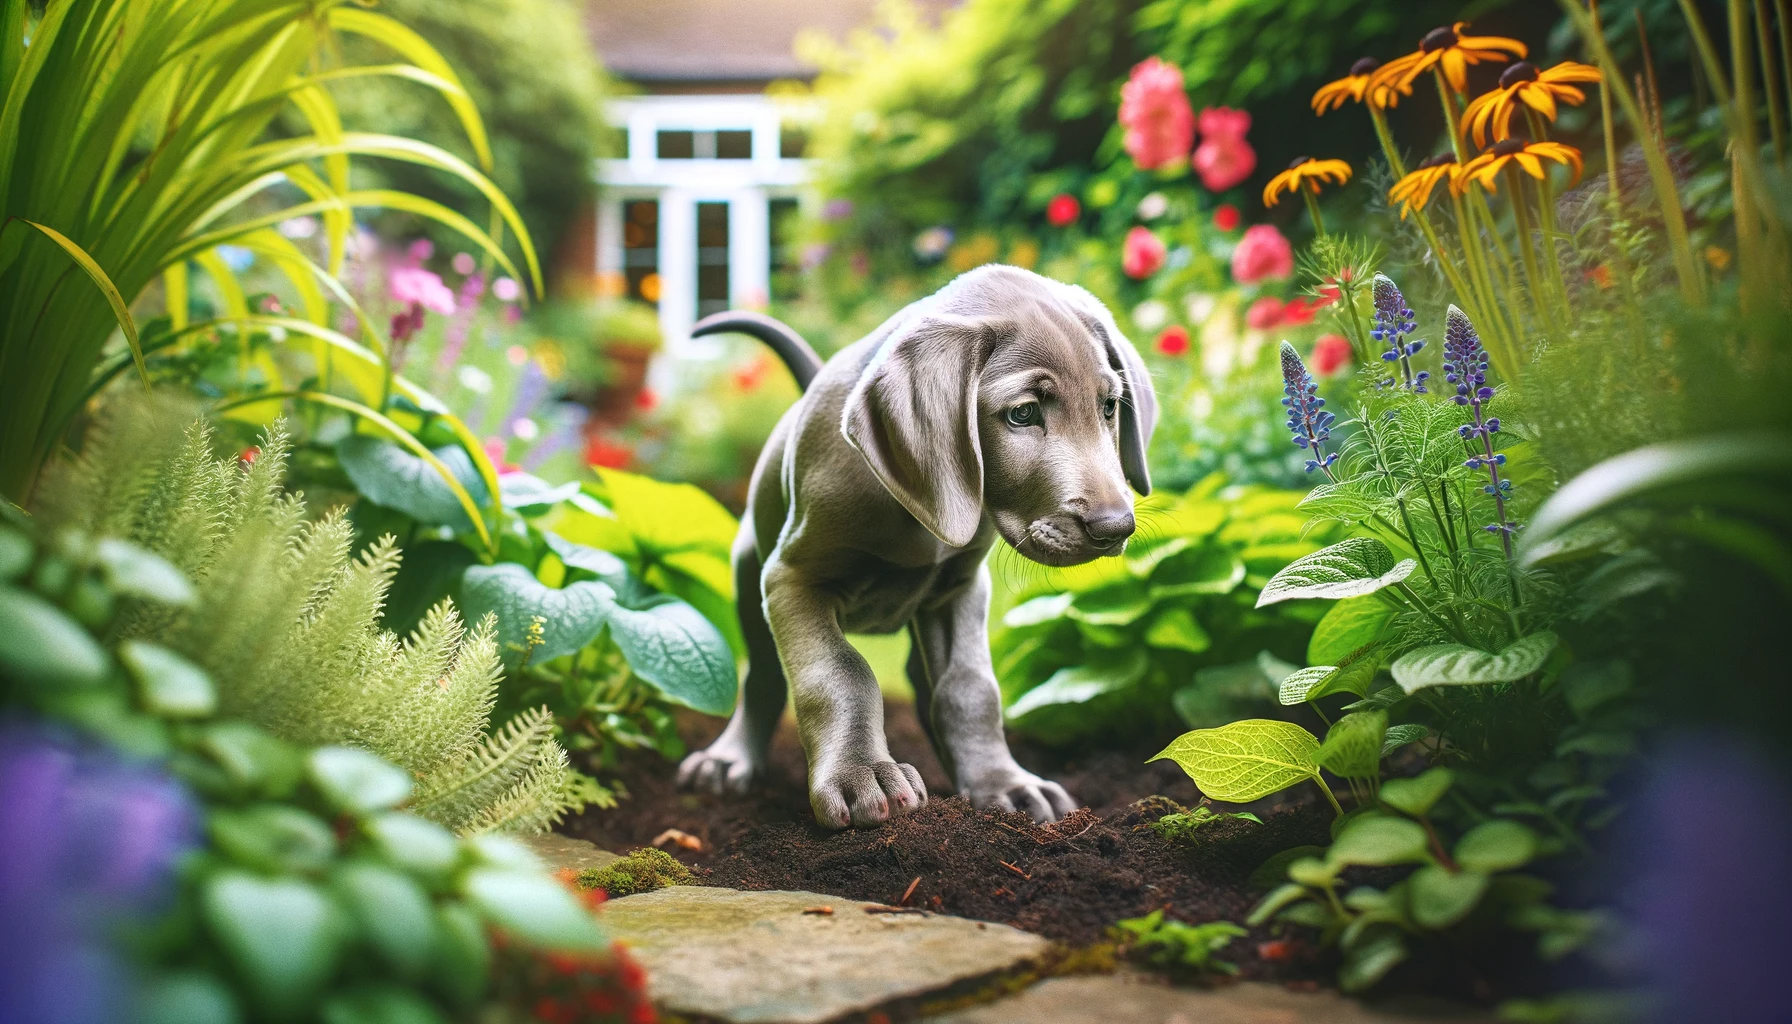 Labmaraner puppy curiously exploring a garden